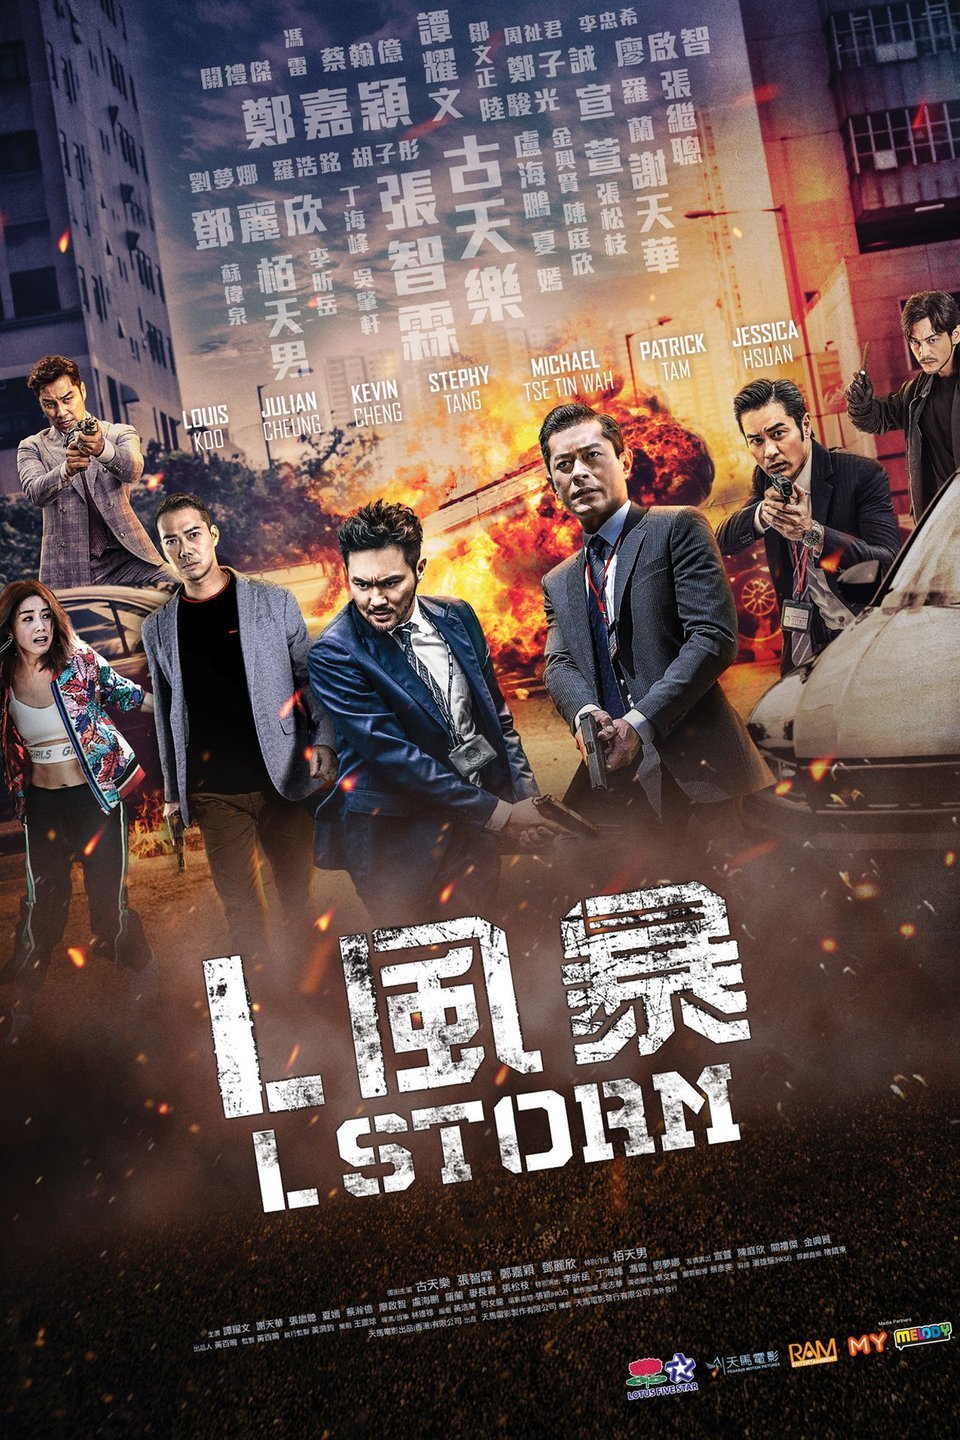 L Storm (2018)